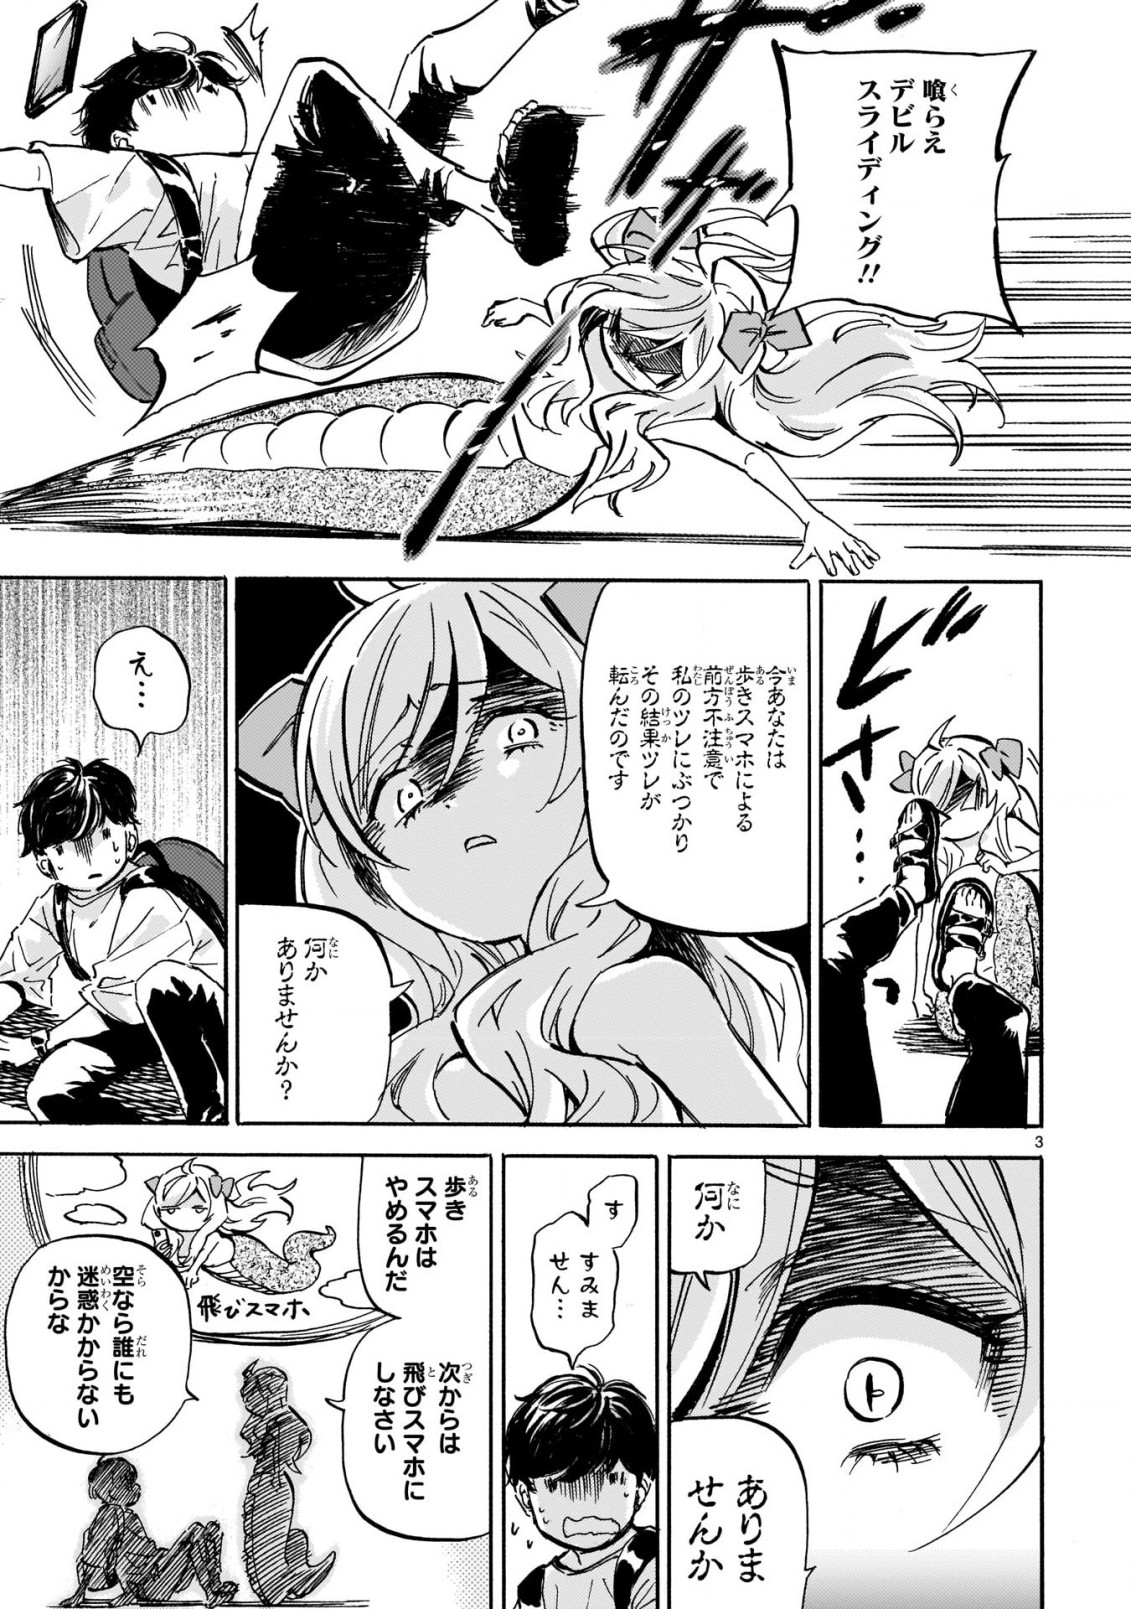 Jashin-chan Dropkick - Chapter 219 - Page 3